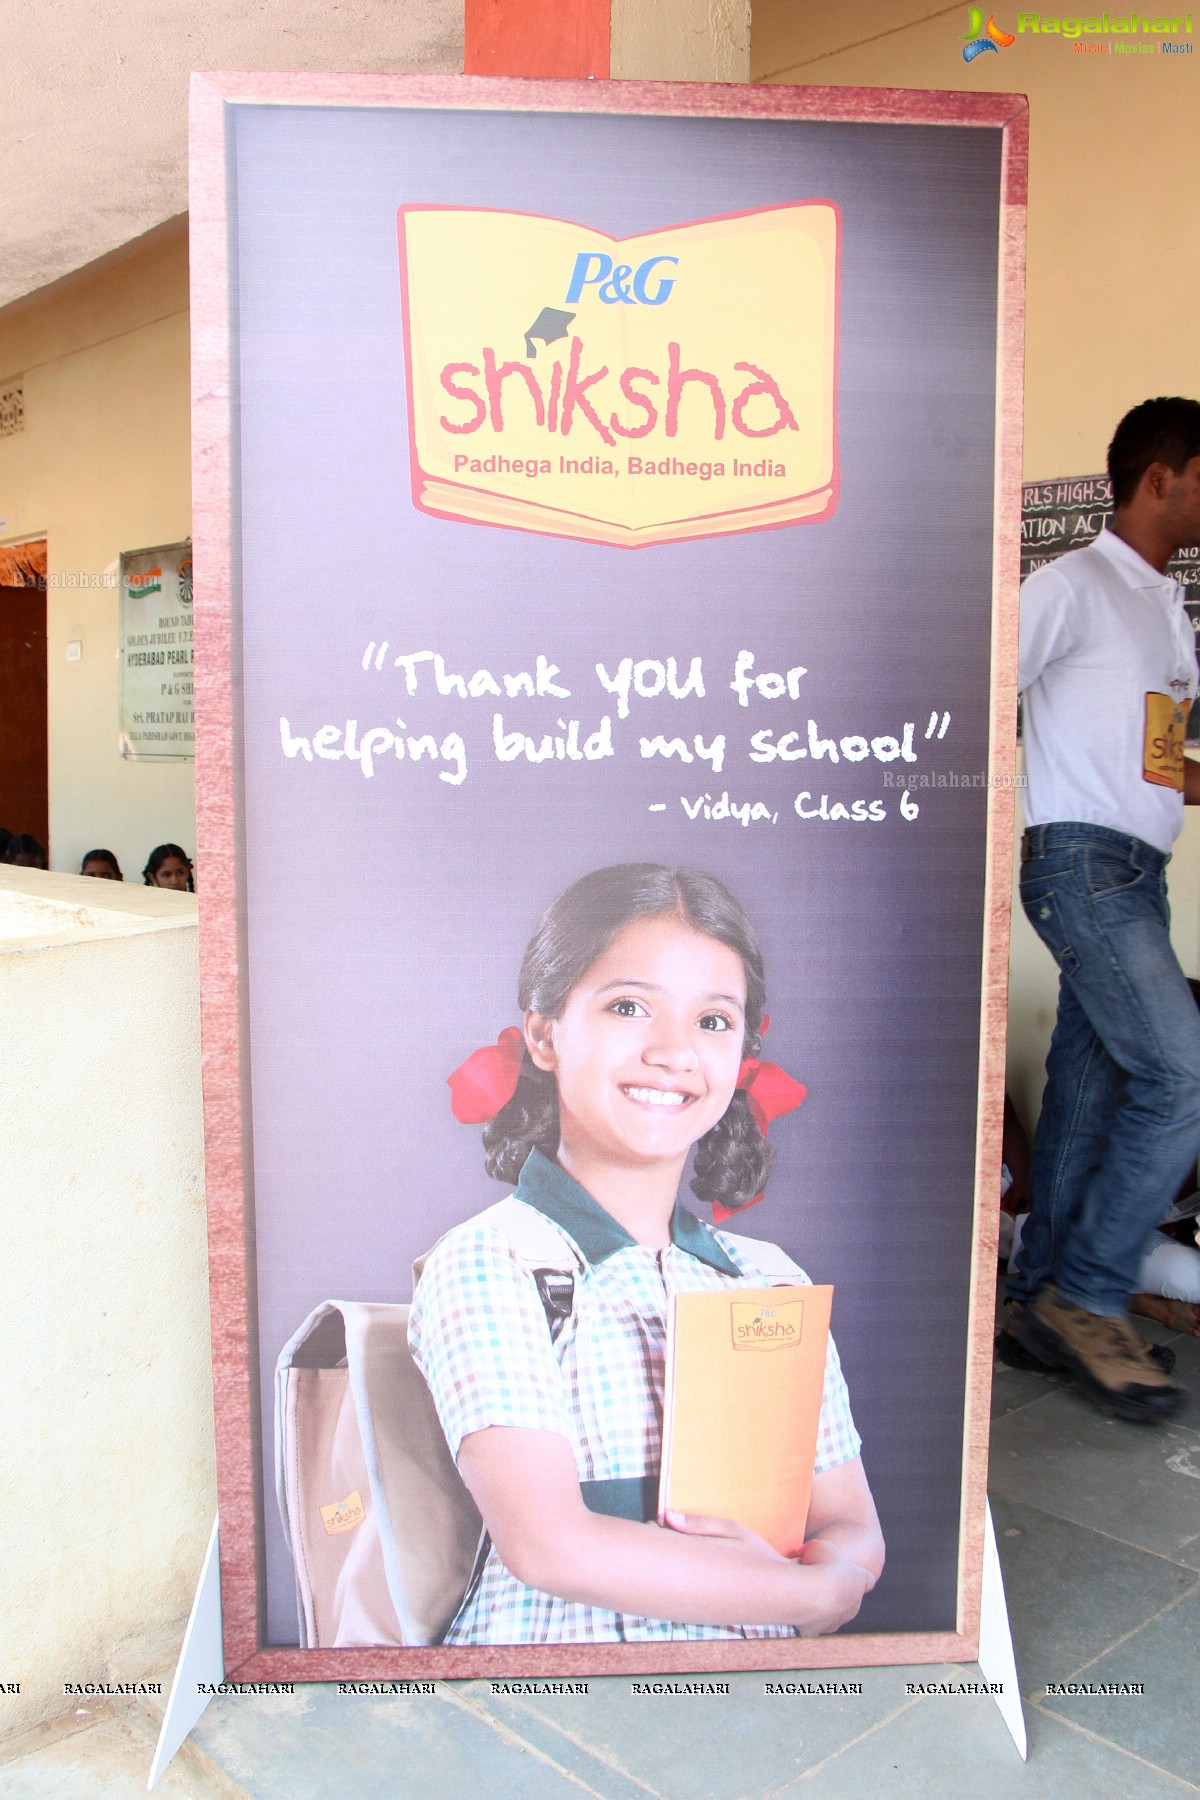 Sameera Reddy at 'P&G Shiksha Diwas' Event at Hyderabad